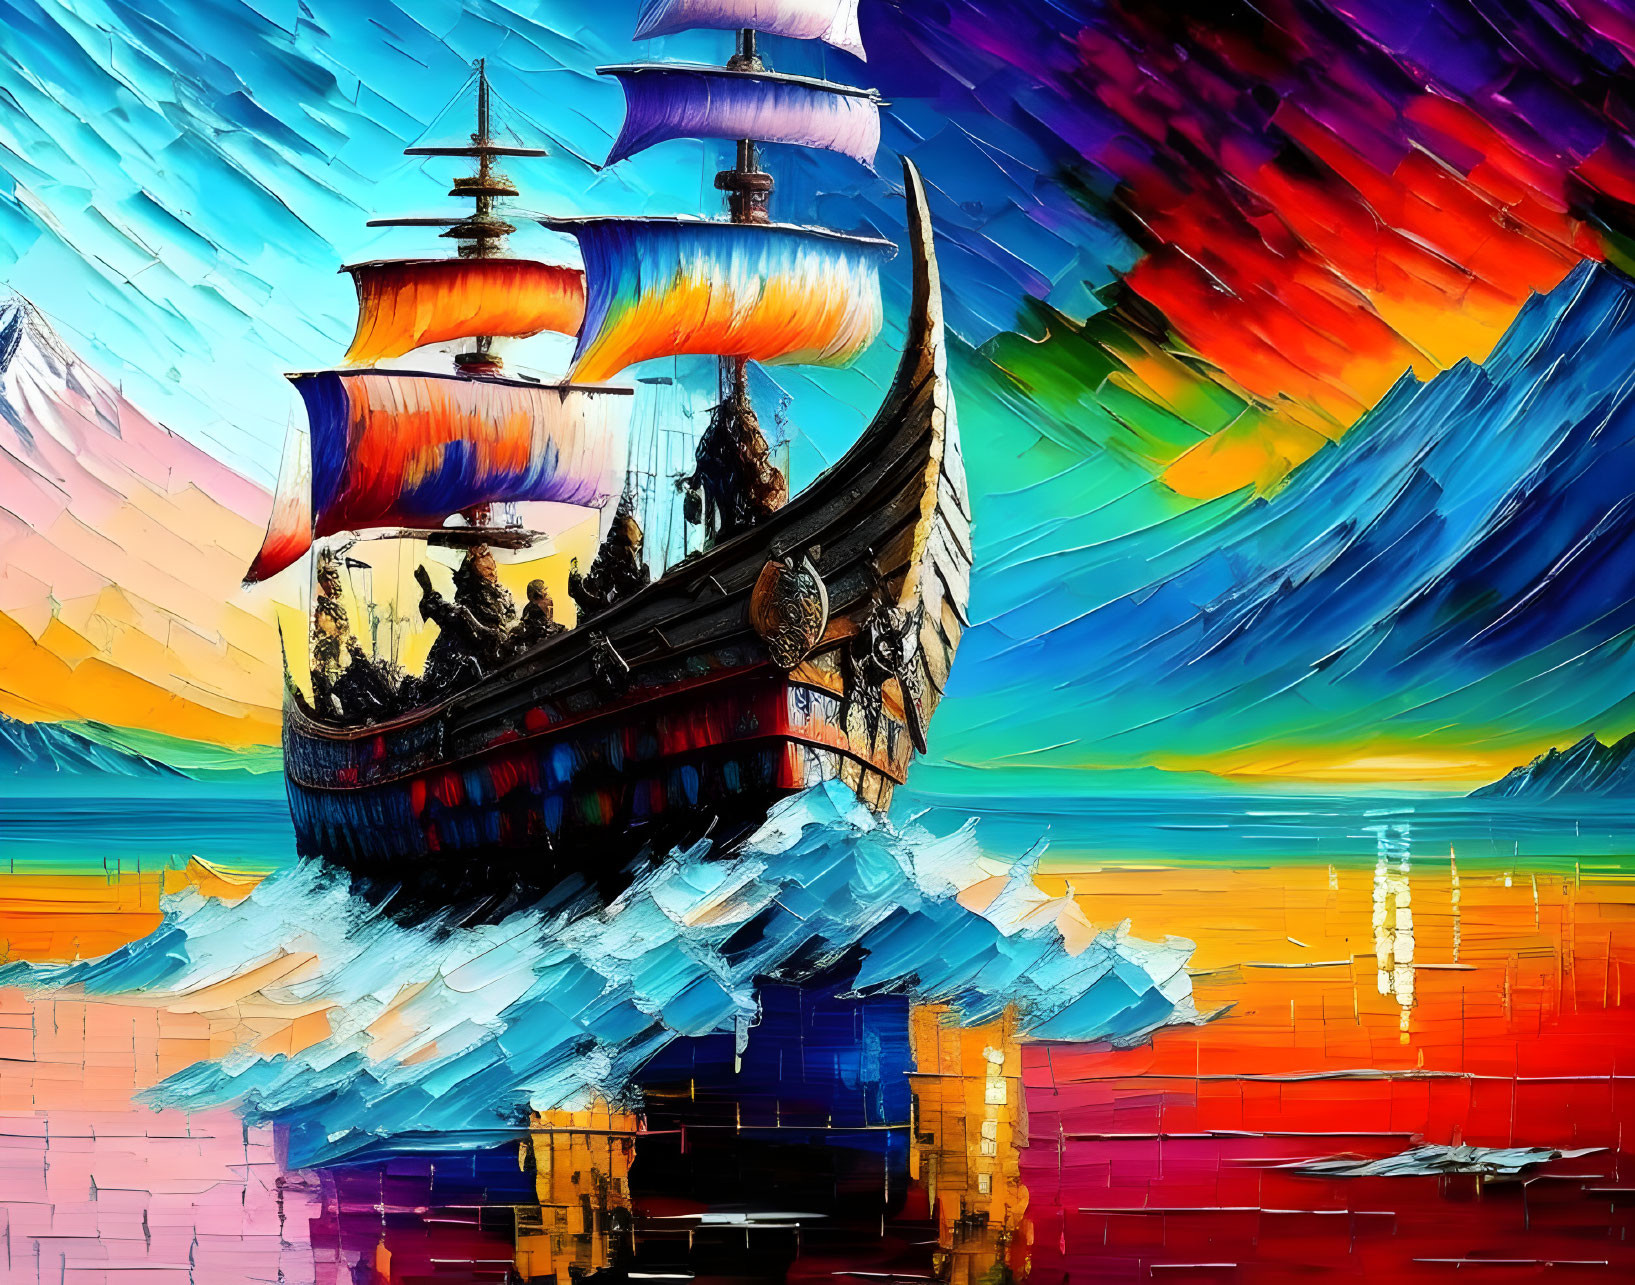 Sailor ship (Fantasy}